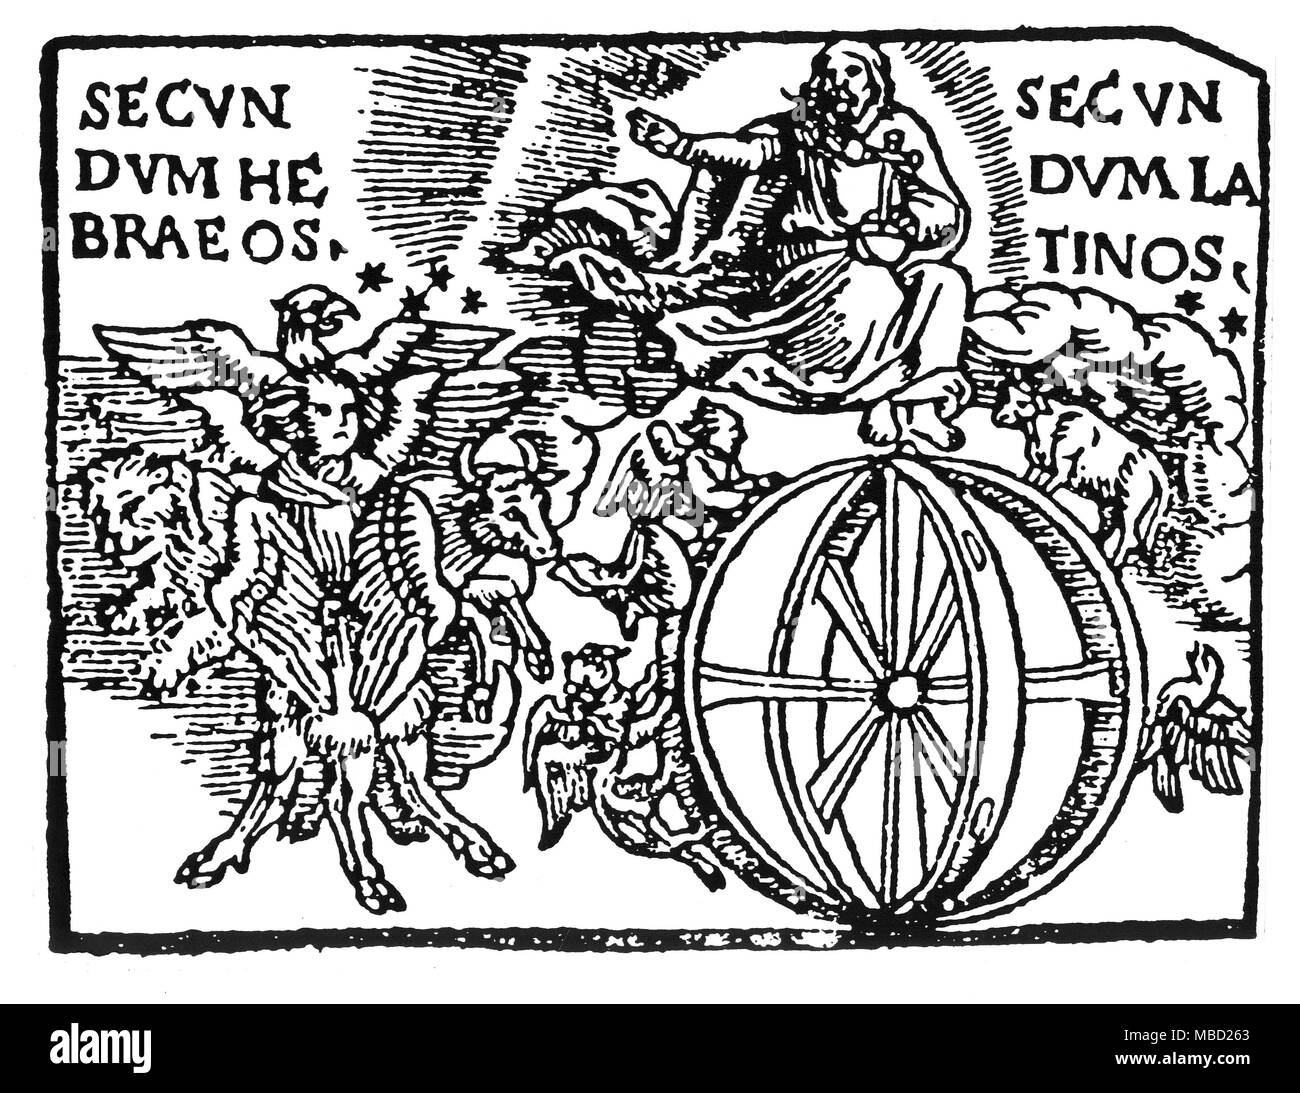 Simboli - UFO - Visioni xilografia raffigurante la visione di Ezechiele - la ruota che gira, con le quattro creature degli evangelisti, è stata indebitamente rivendicati come un inizio di descrizione di un oggetto volante non identificato, quando si è in realtà biblica) una descrizione delle gerarchie di spirituale al di là dei confini del tempo, segnato dalla sfera di Saturno. A sinistra della ruota doppia è un composito di creature dei quattro evangelisti, che sono anche i segni fissi dello zodiaco - L'Aquila è la creatura di Giovanni, il leone è l'animale del marchio, il Bull è l'animale di Luke, mentre il Foto Stock